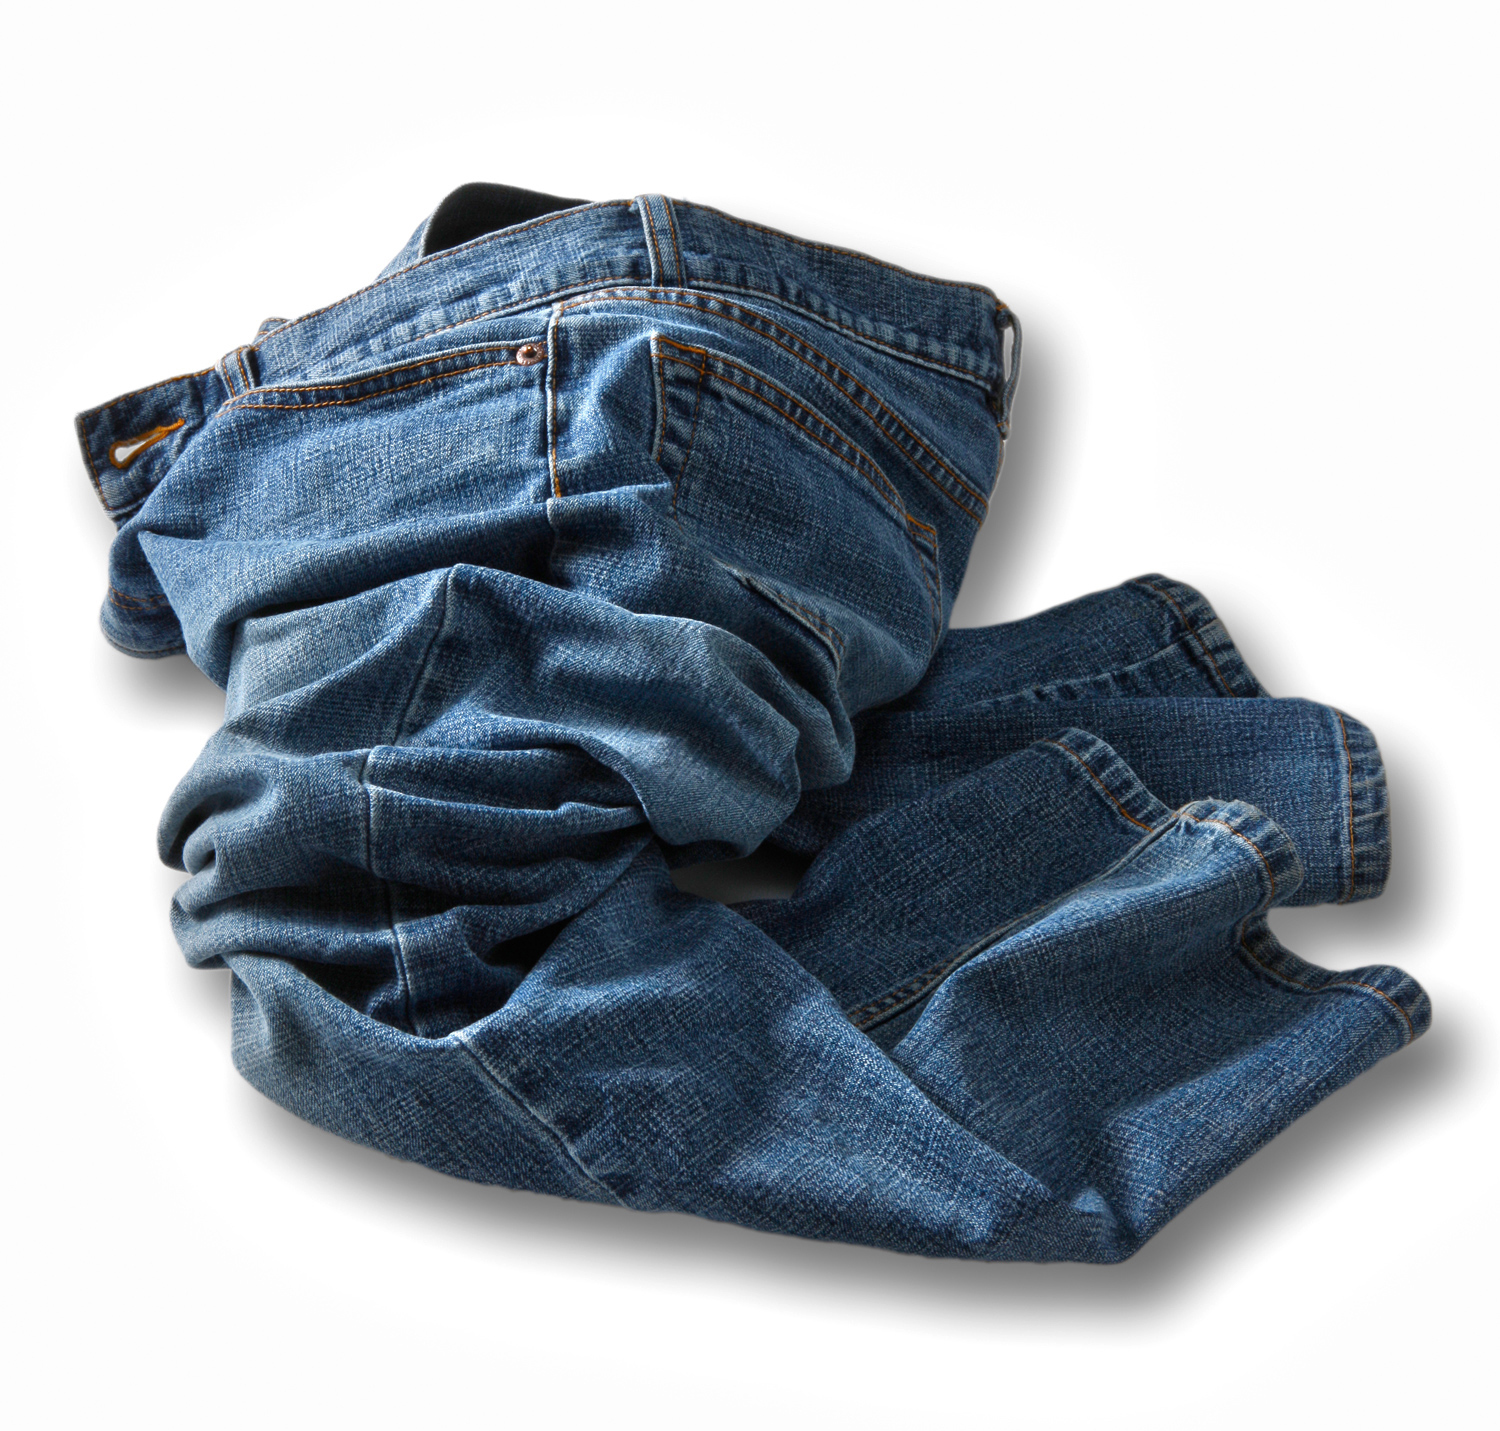 jeans.optimized.1.jpg